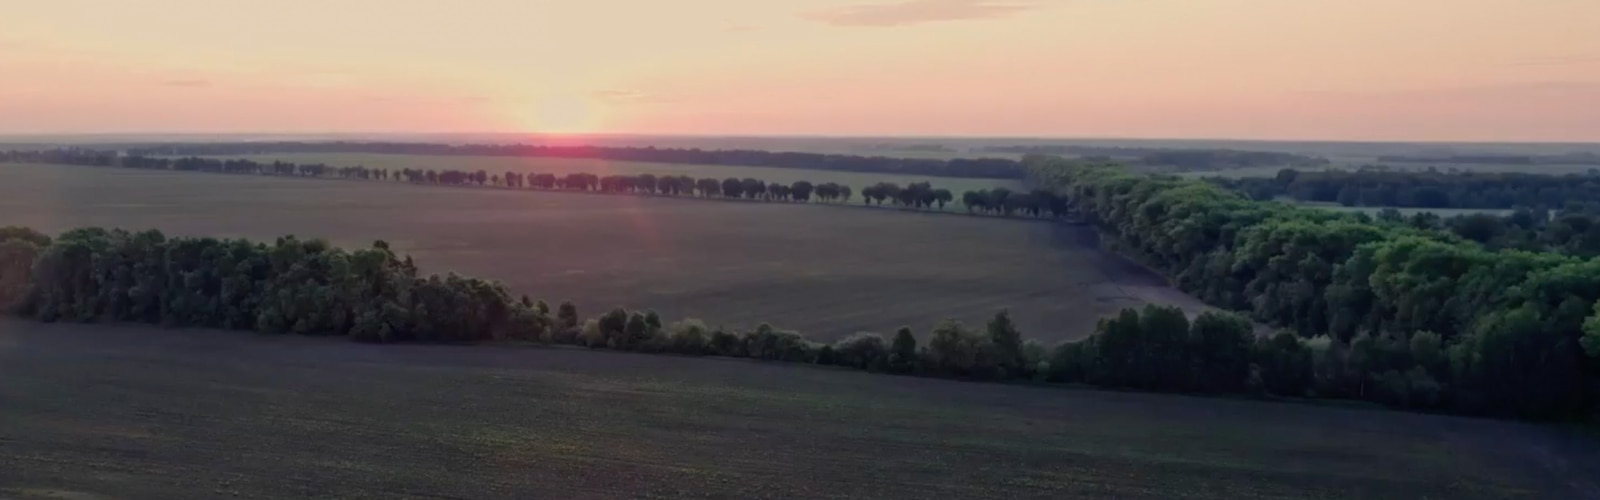 Felder, getrennt durch Bäume, und ein Sonnenuntergang im Hintergrund